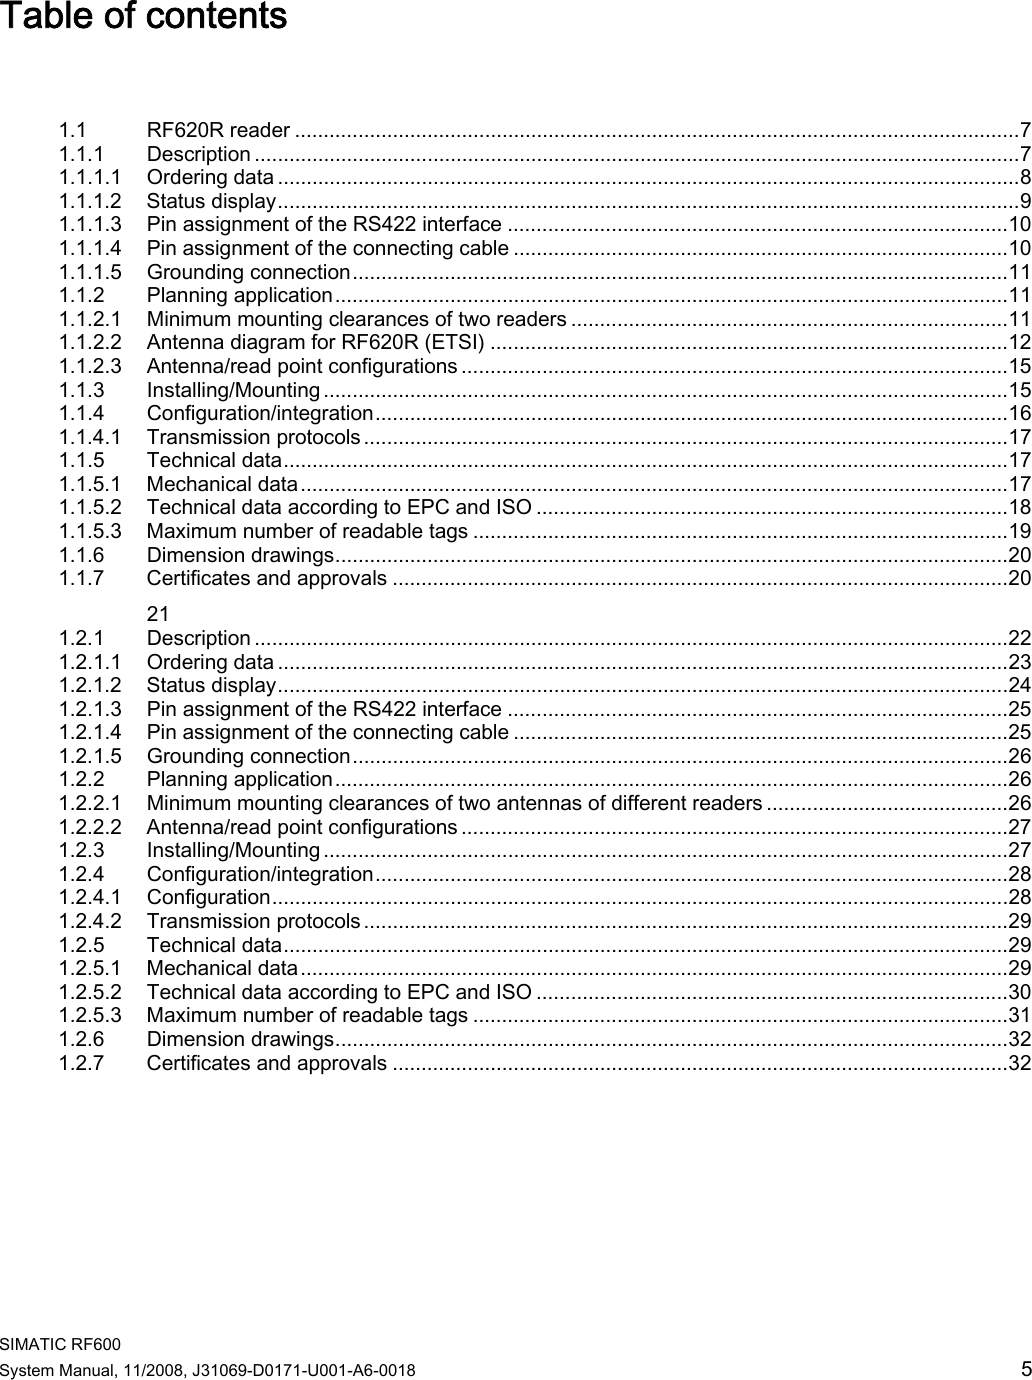 Page 1 of Siemens RF630R UHF RFID READER User Manual System Manual RF600 en